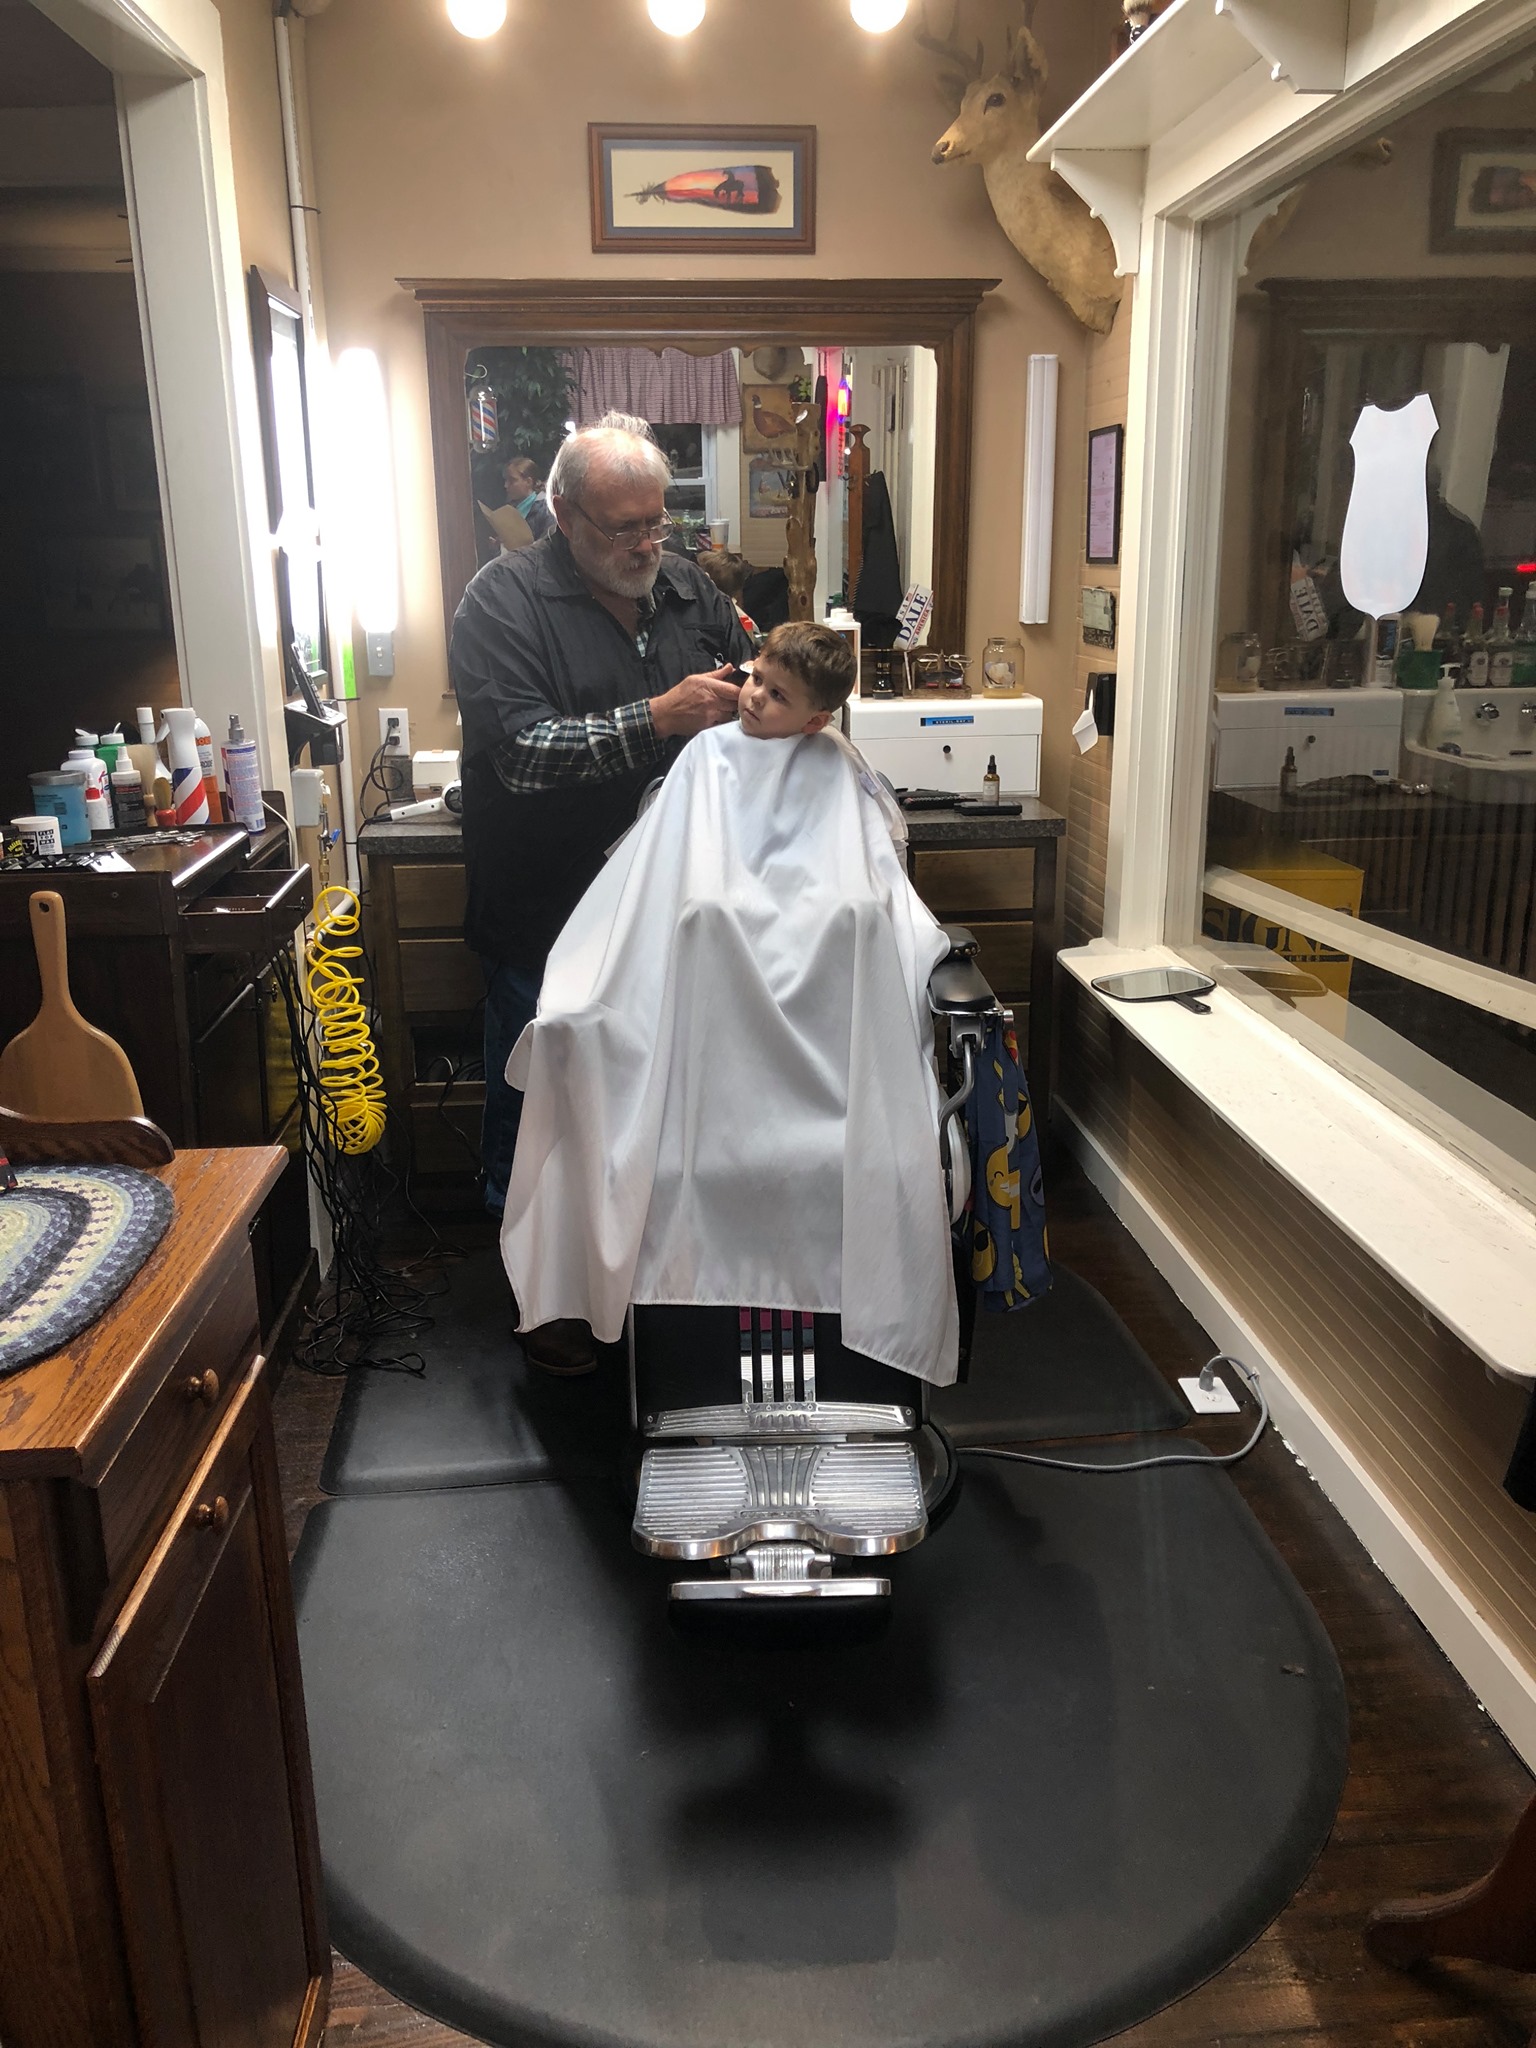 The gentlemen’s barbershop